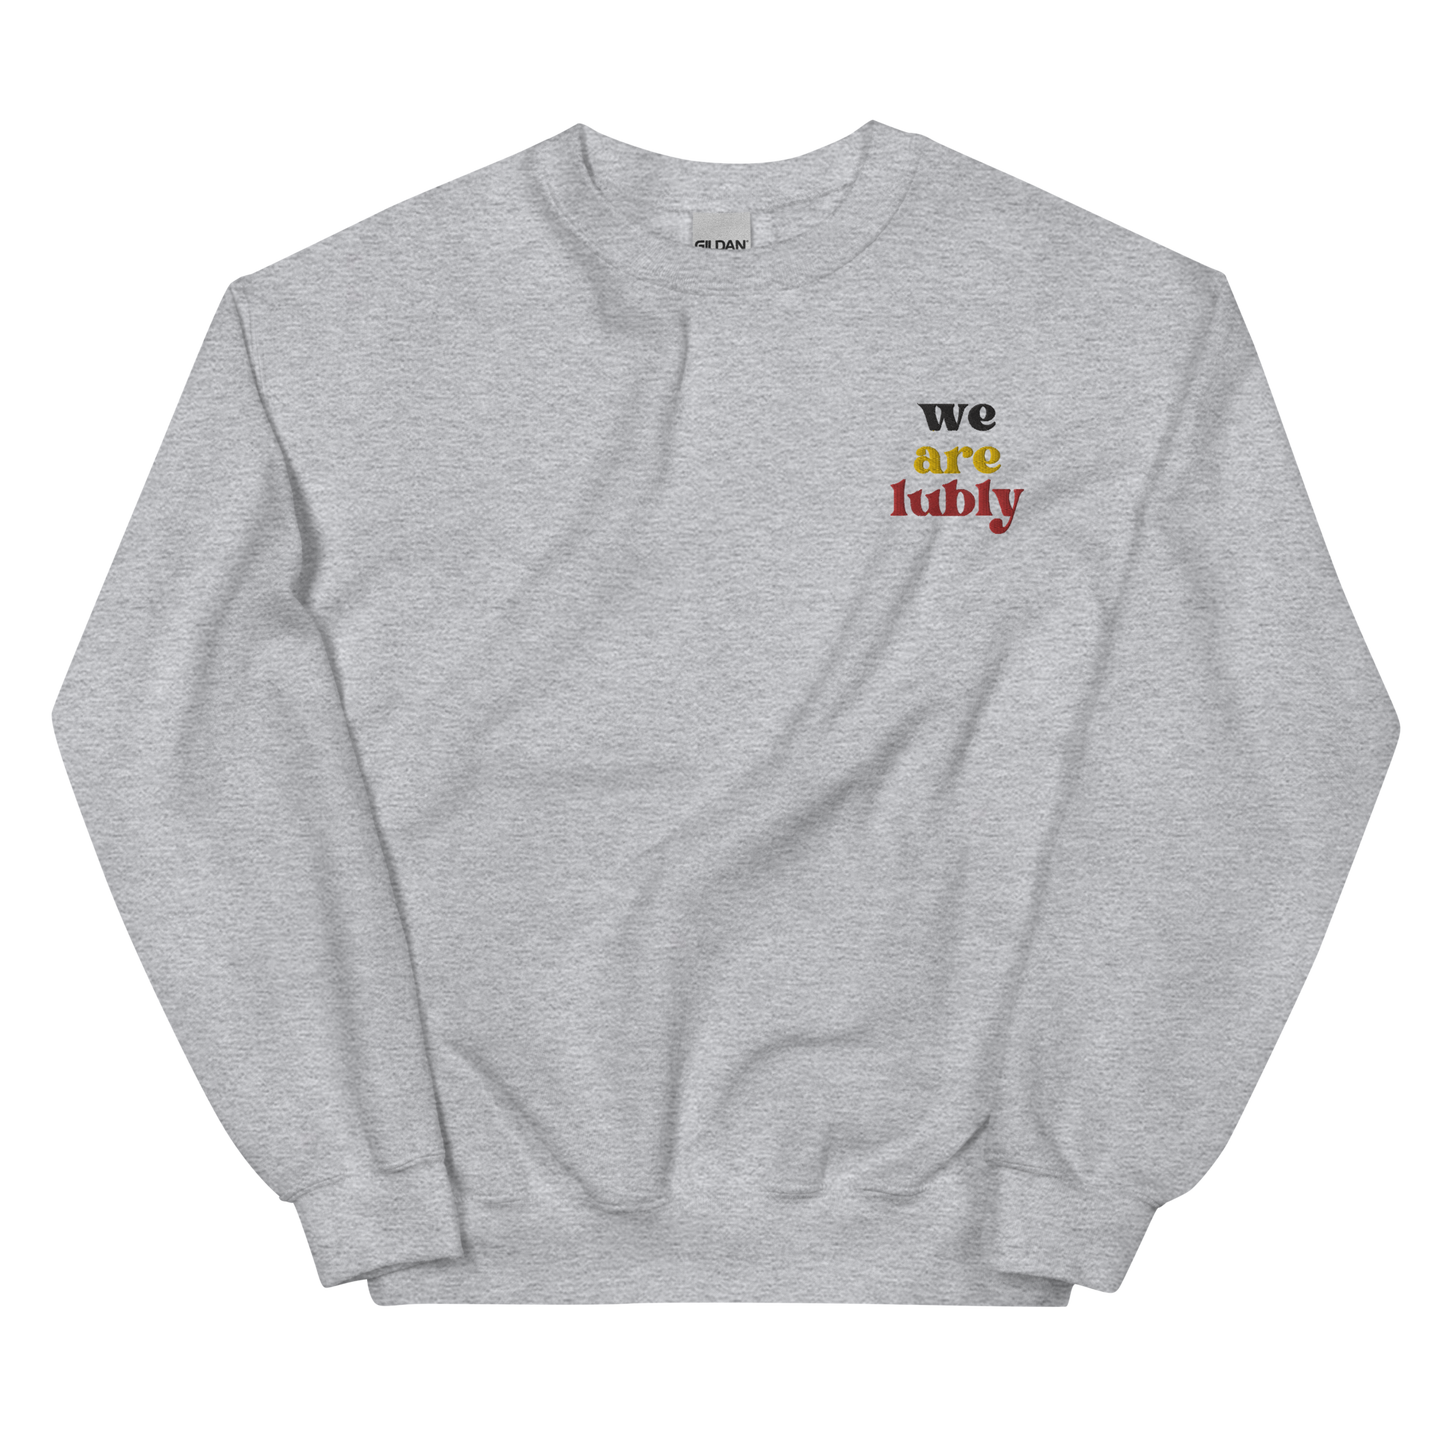 WeAreLubly Sweatshirt